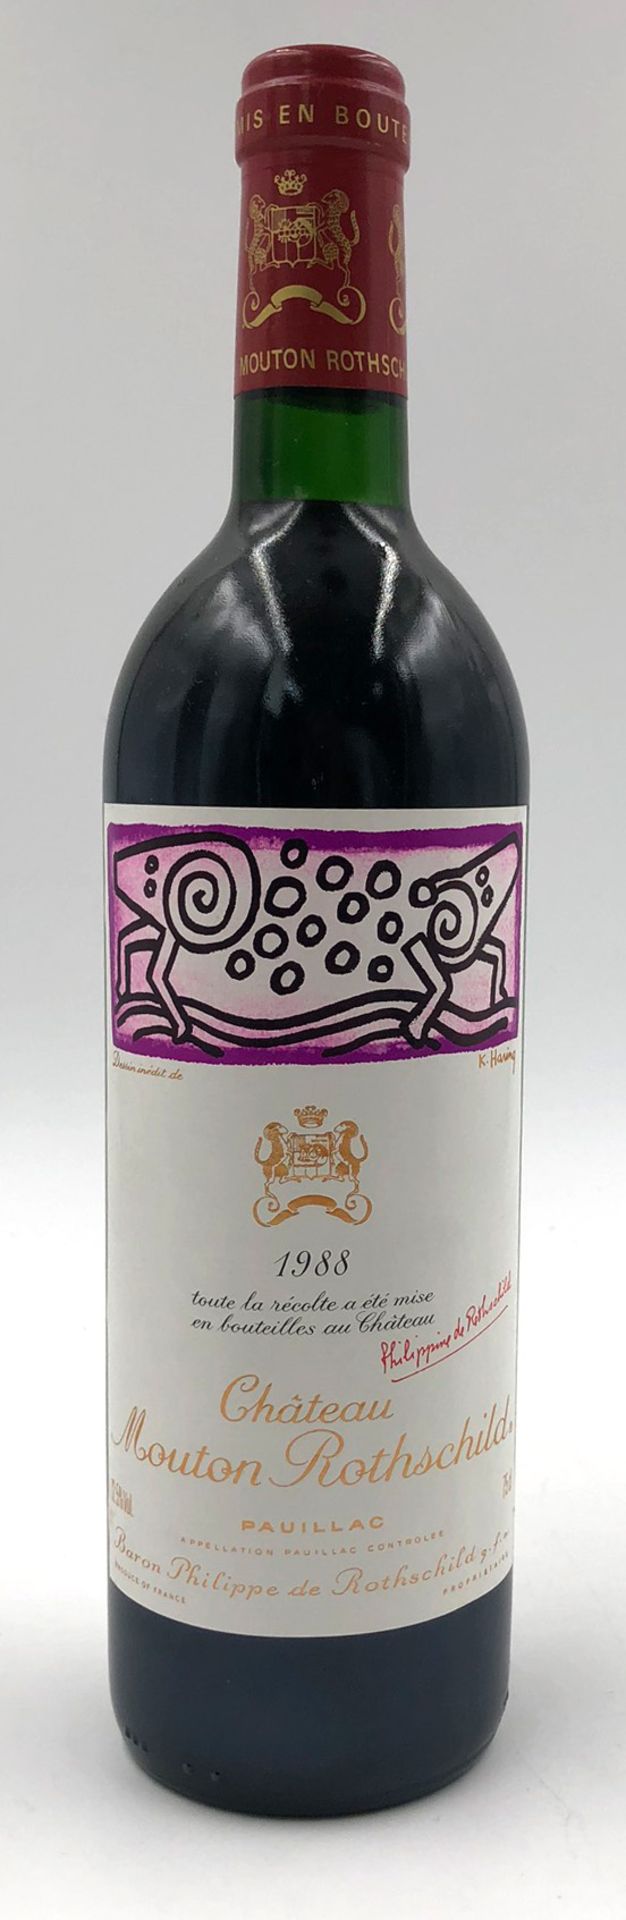 1988 Chateau Mouton Rothschild. A.C. Paullac. 1ere Grand Cru Classé.A whole bottle. 12.5% Vol. 75